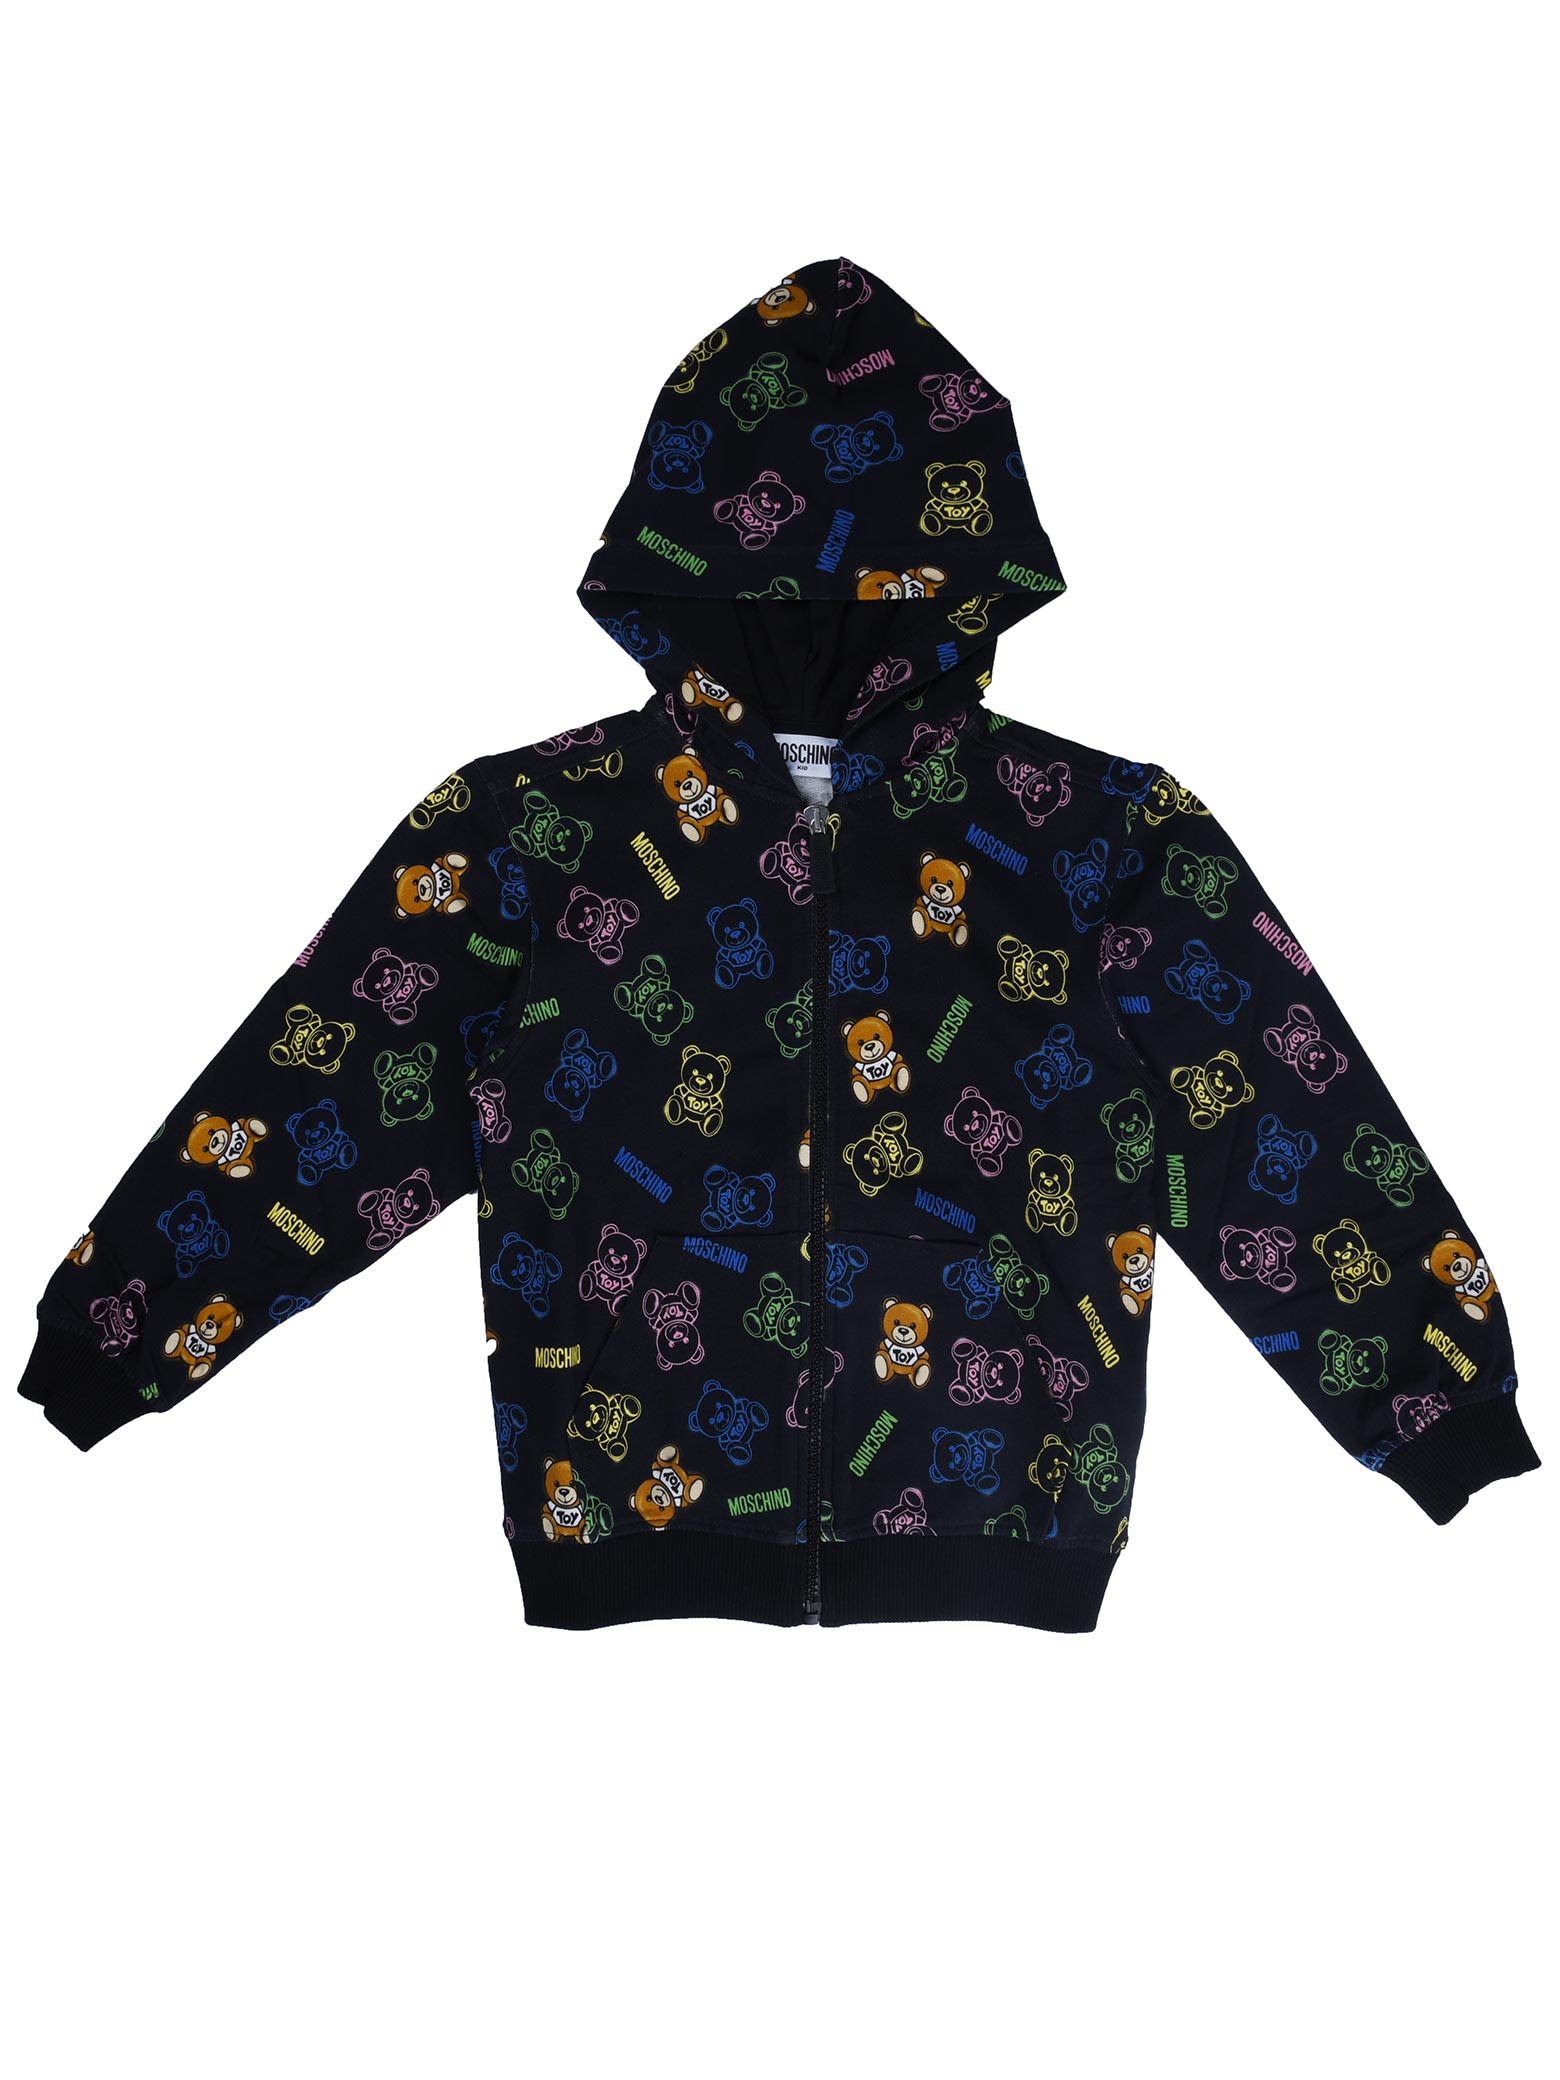 Moschino Black Full Zip Sweatshirt With Bear Print